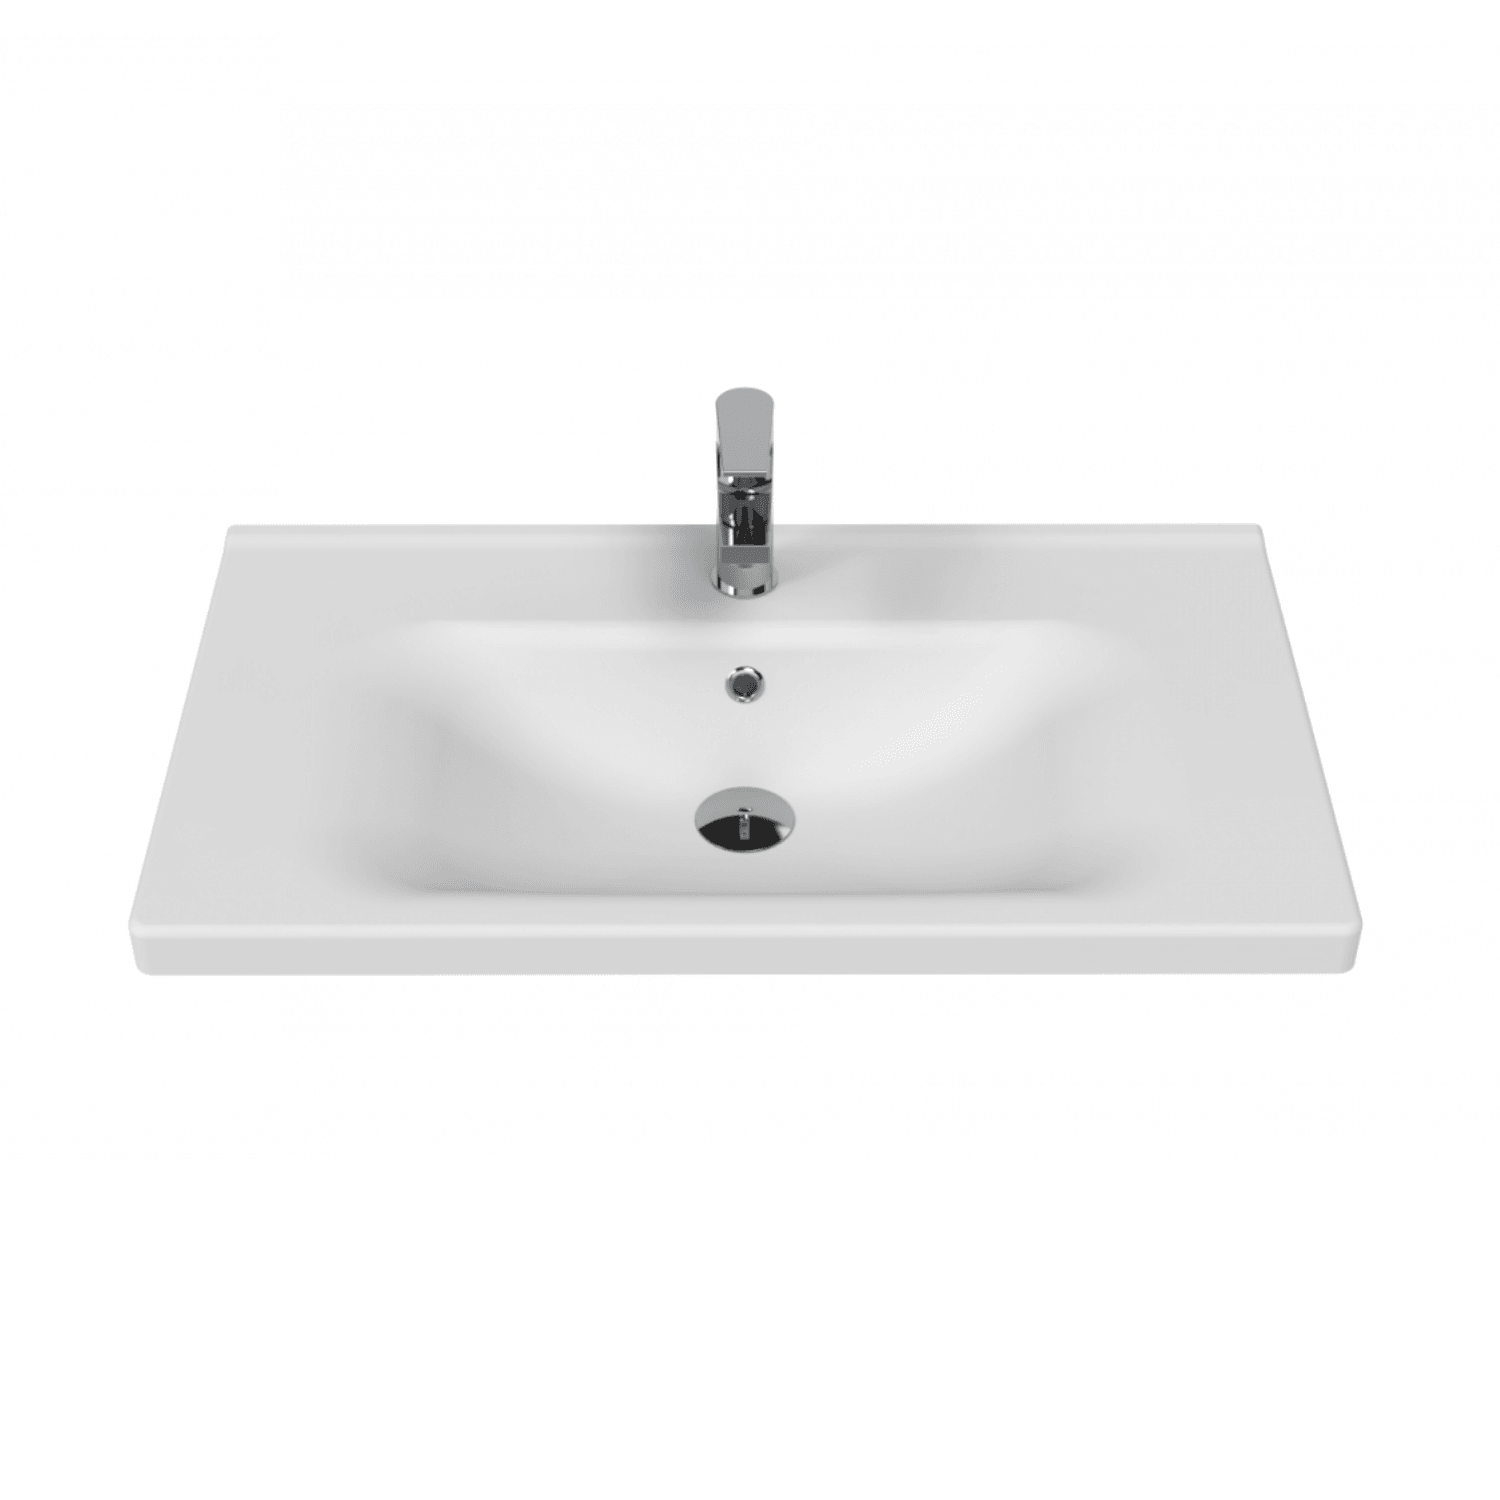 Eksen Etajerli Lavabo 80 cm Beyaz - Creavit | Banyo Bu Tarafta